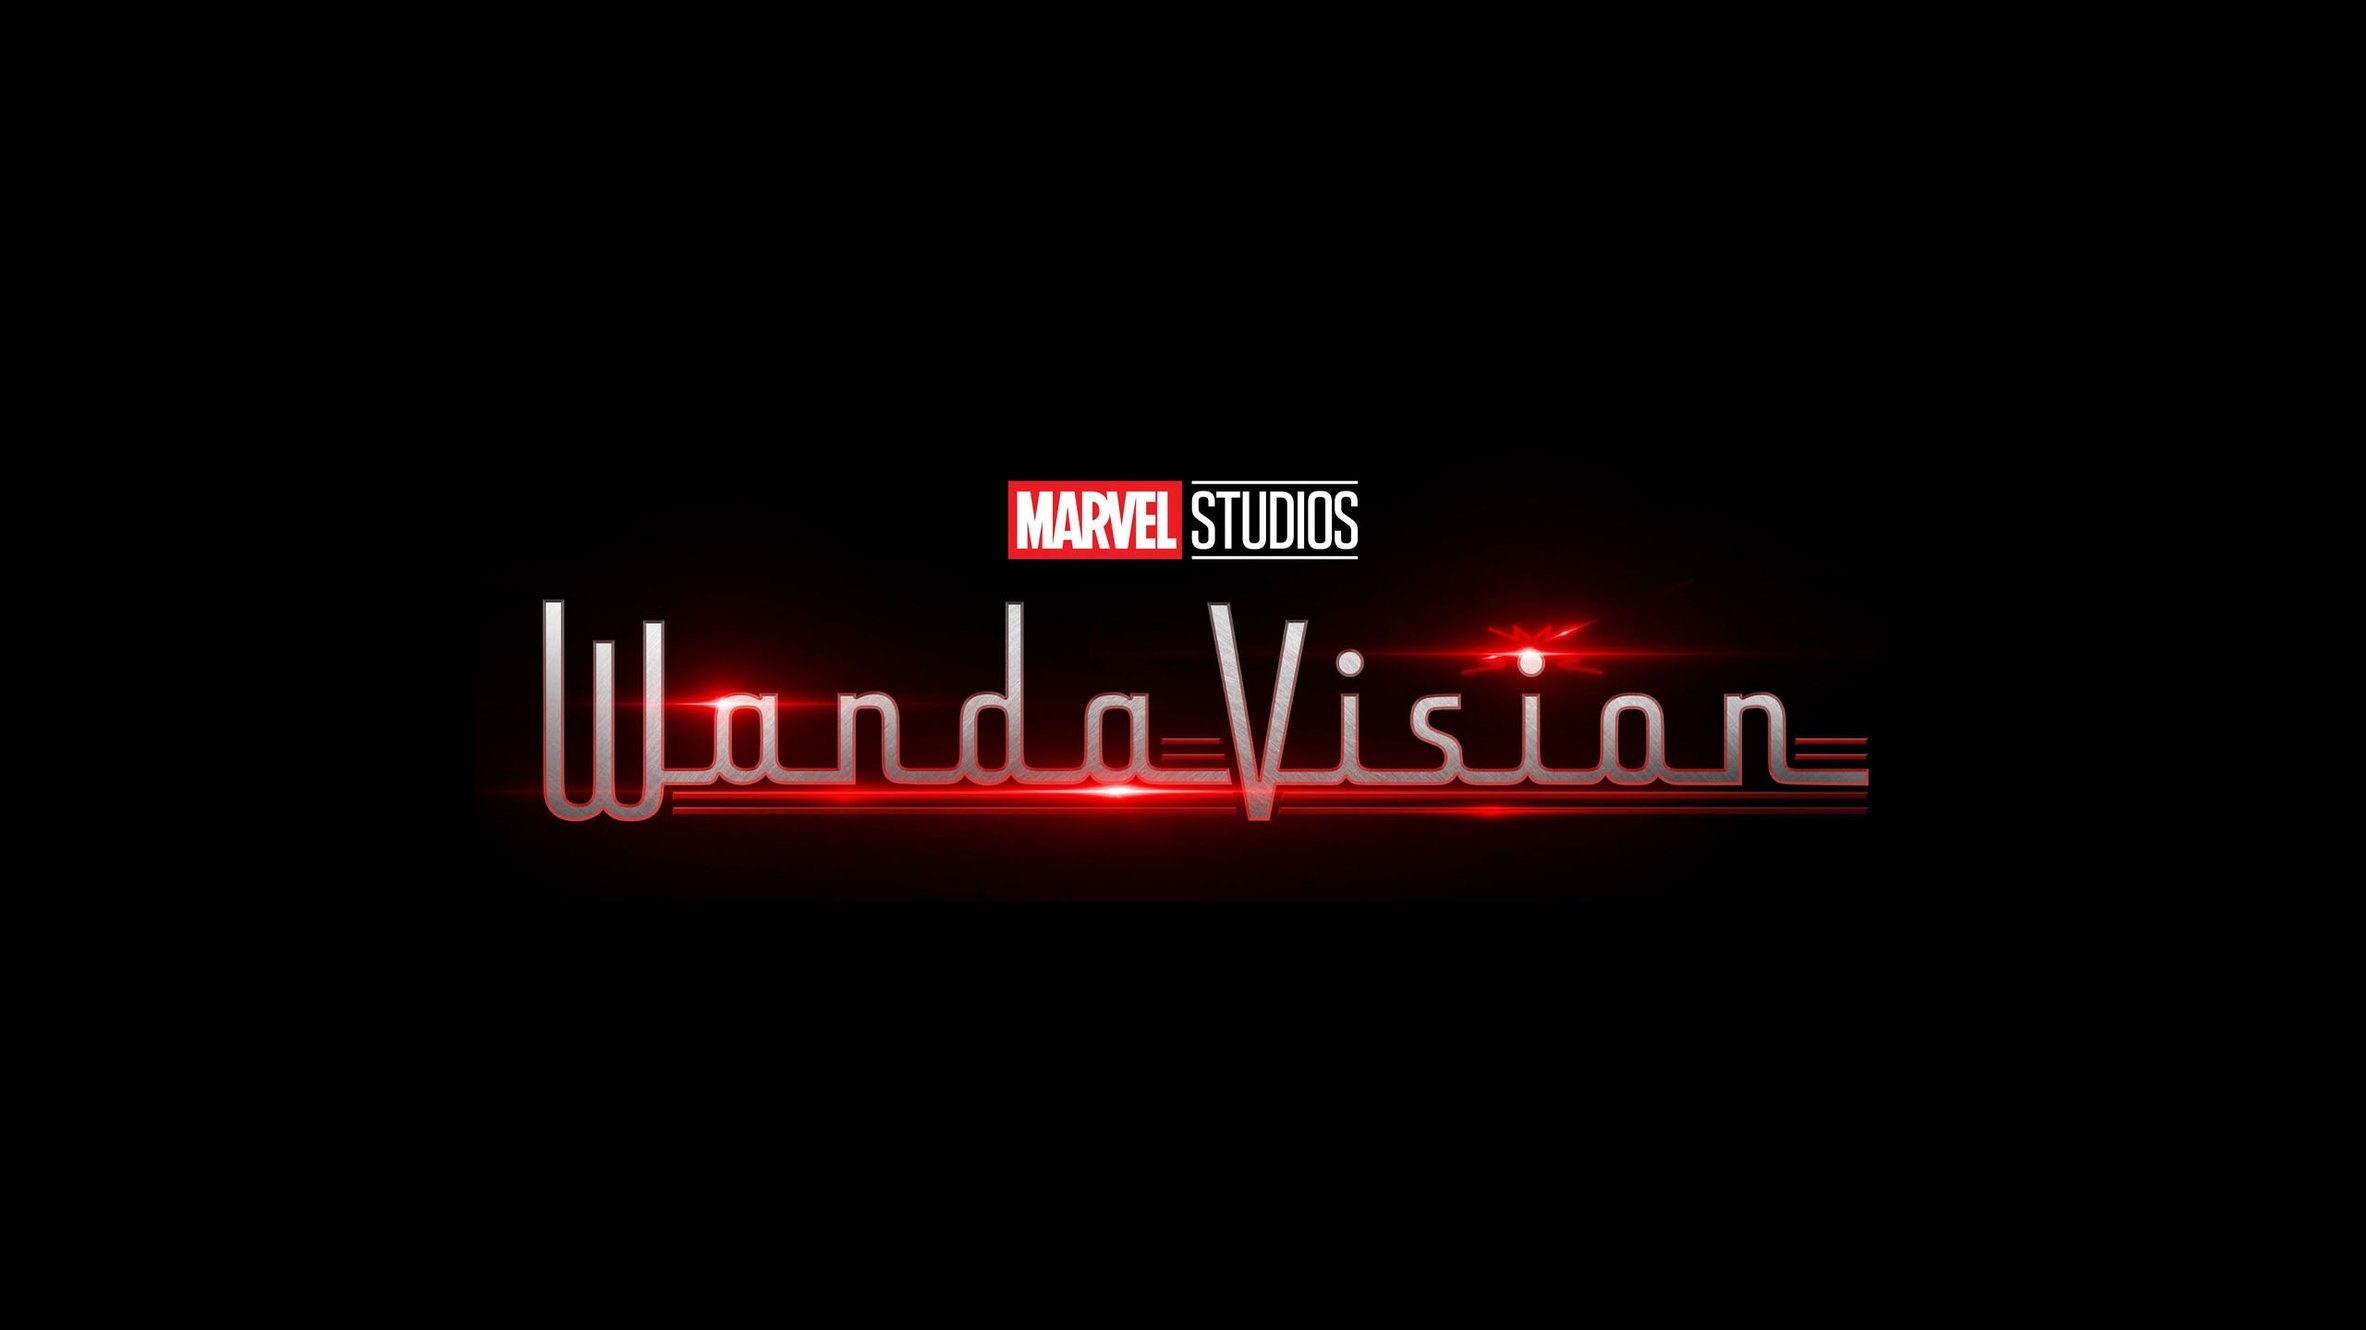 Casting Extra's For Marvel's WandaVision! A Disney + Original Series